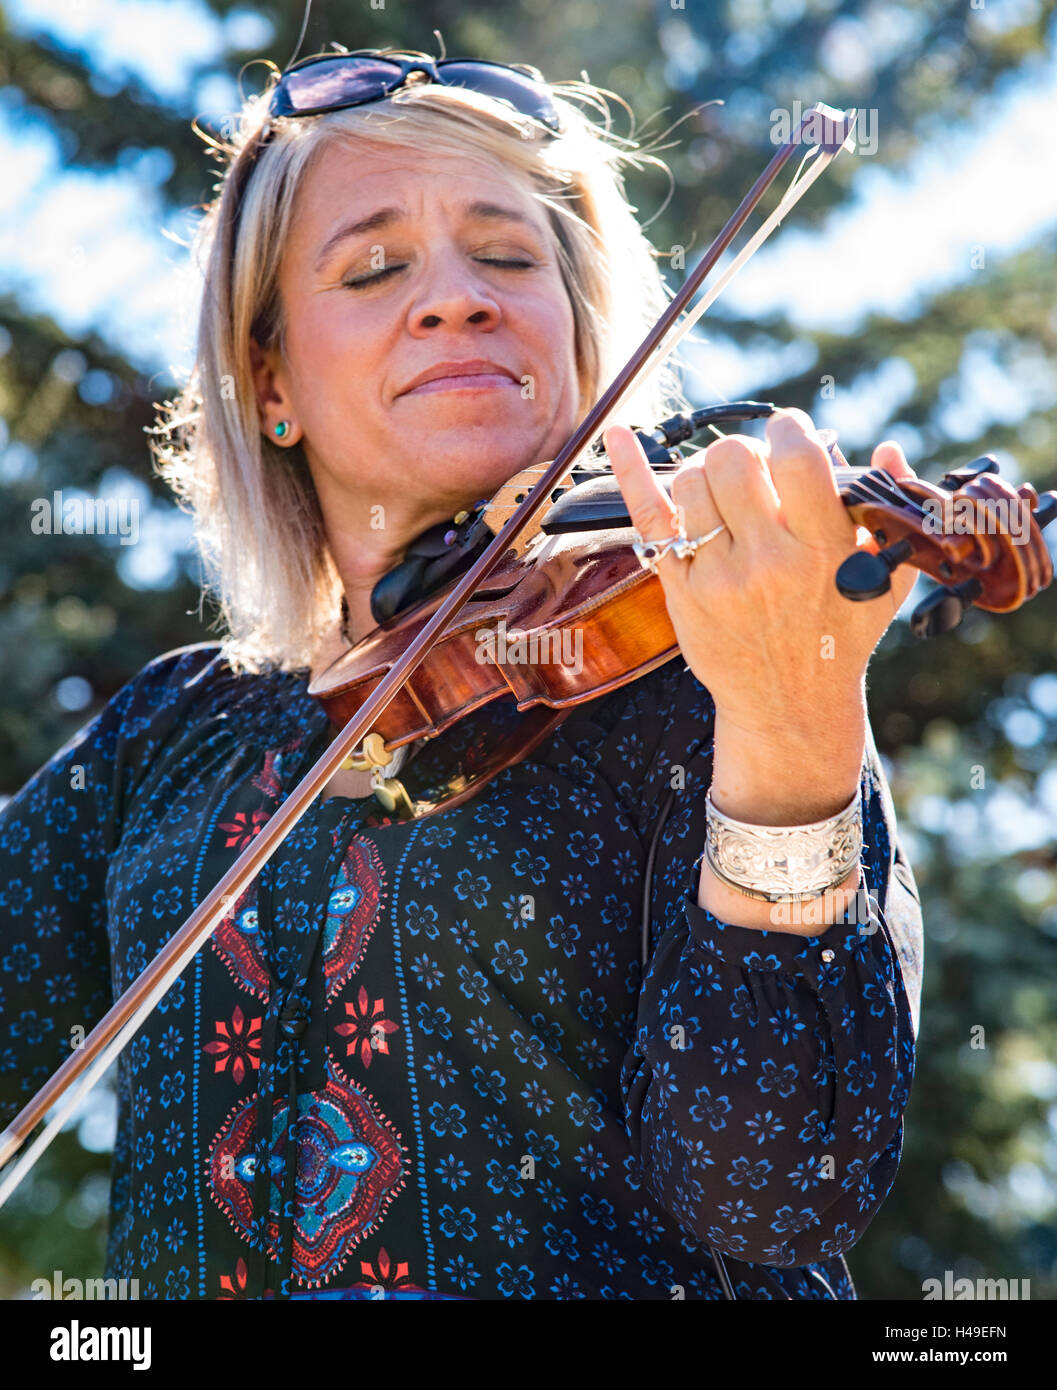 Hinterkante des Schaf-Festivals Fiddler durchführen, vor Publikum, Folklife Messe, Hailey, Idaho, USA Stockfoto